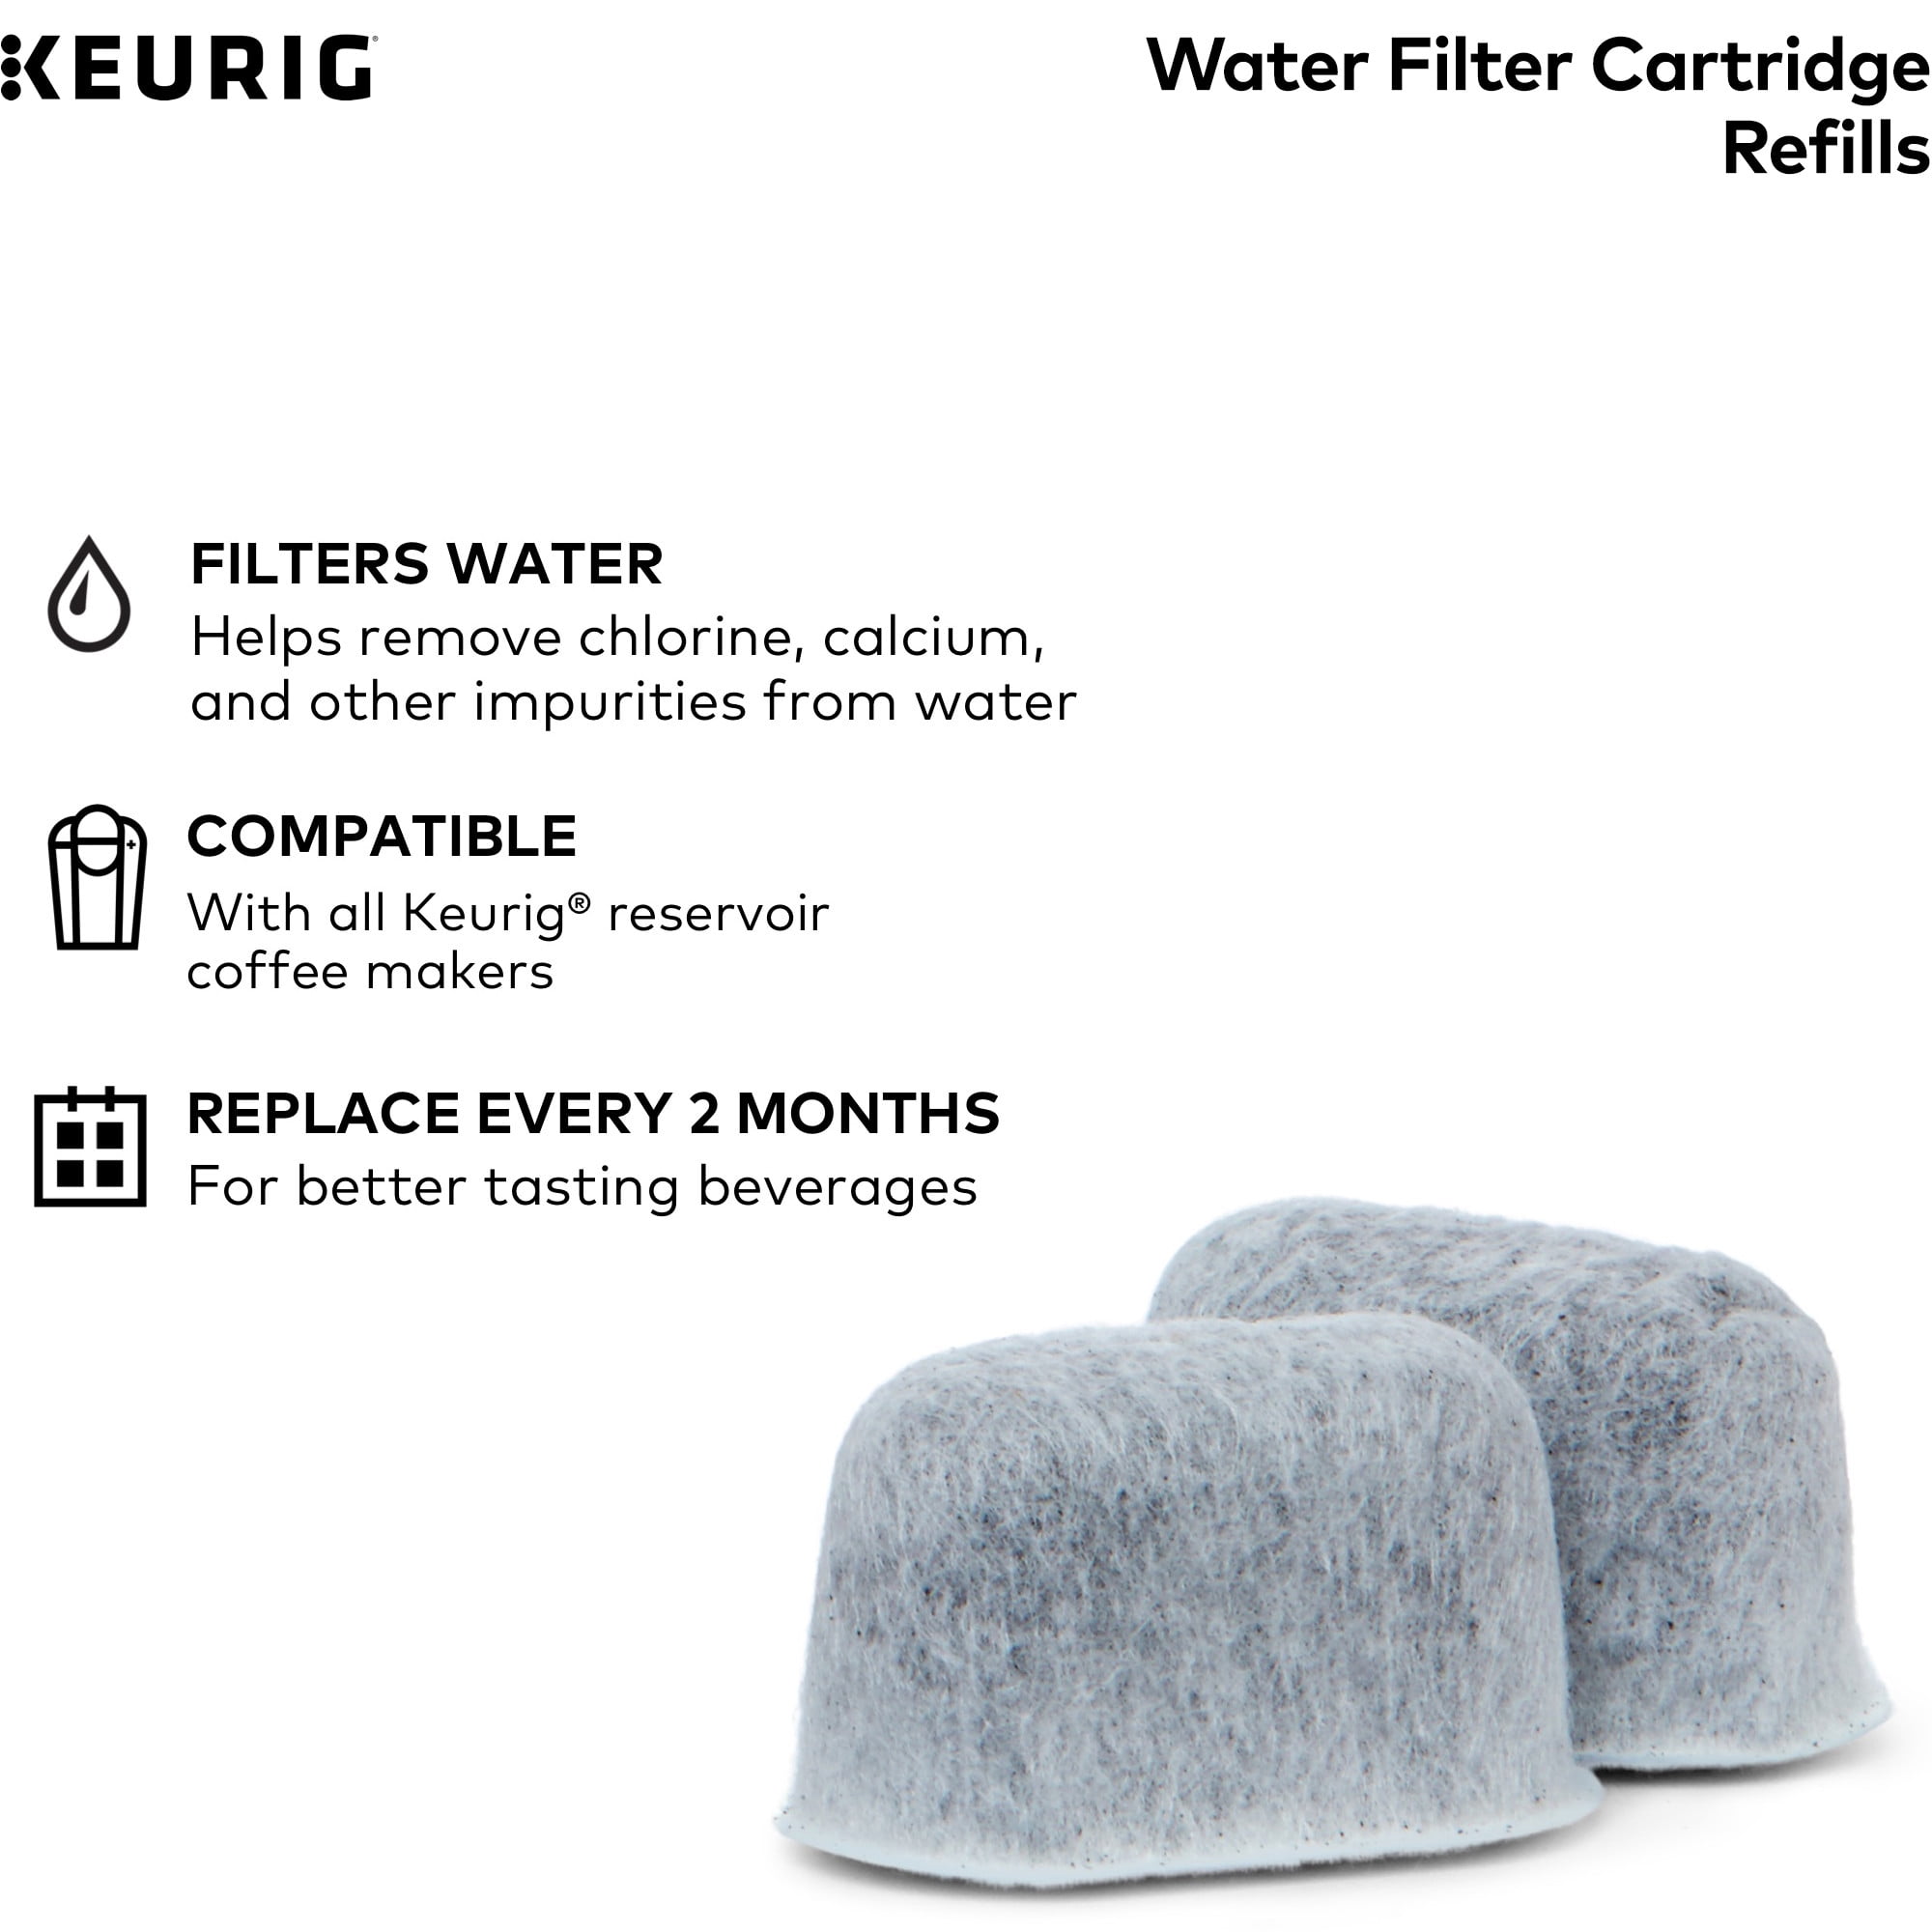 Pureking 8541893410 Keurig Coffee Maker Water Filter Cartridges Set for sale online 